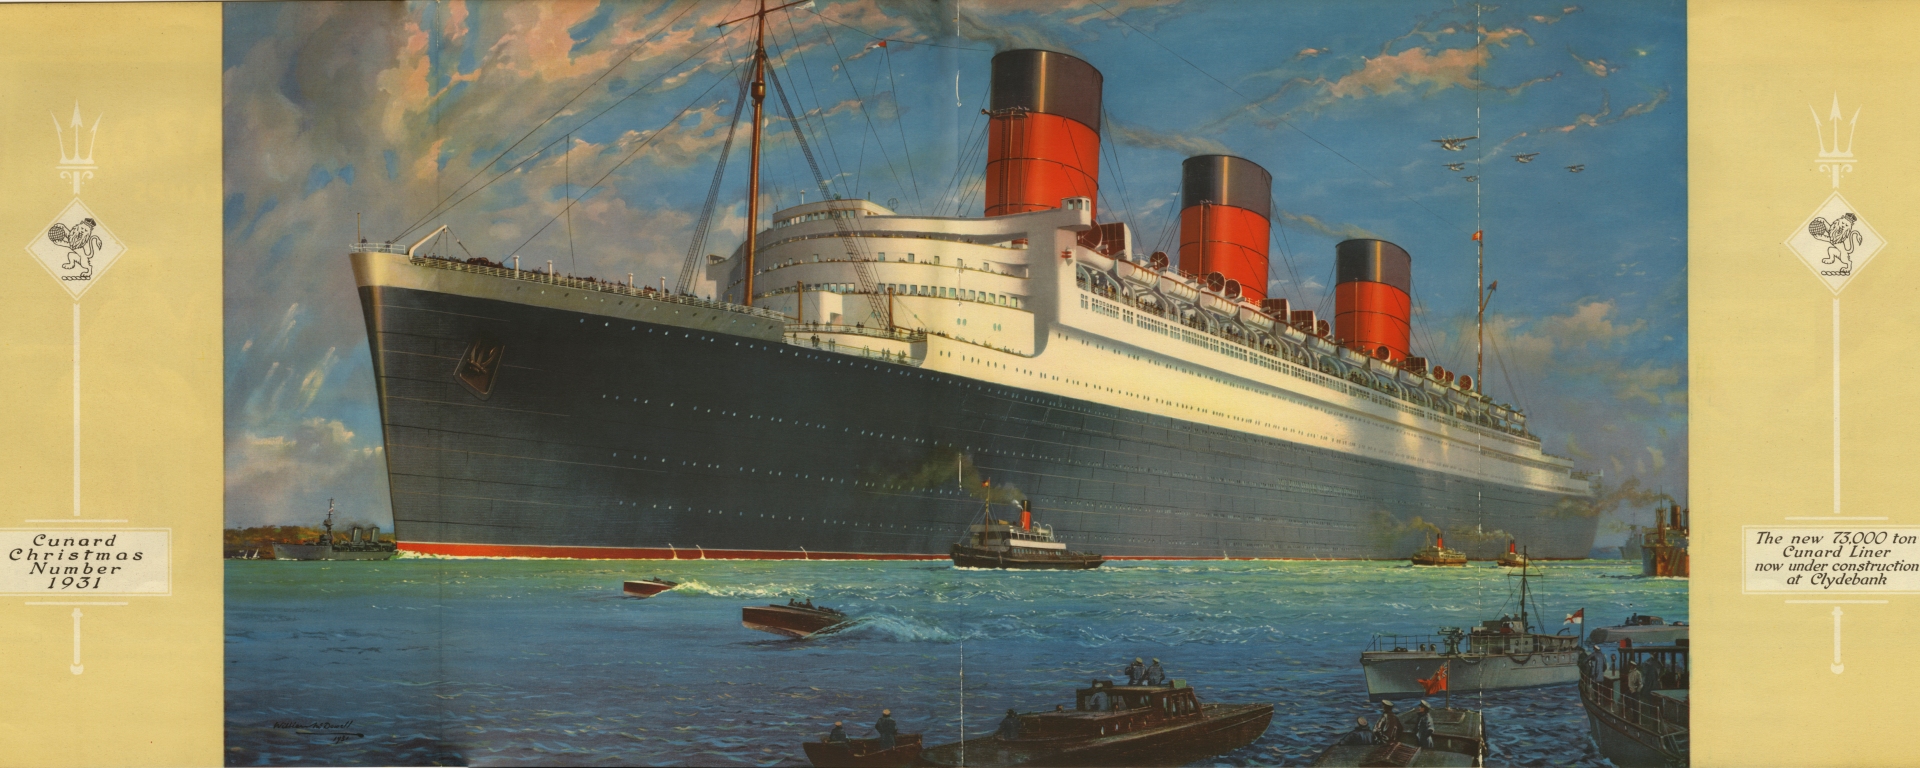 Cunard liner